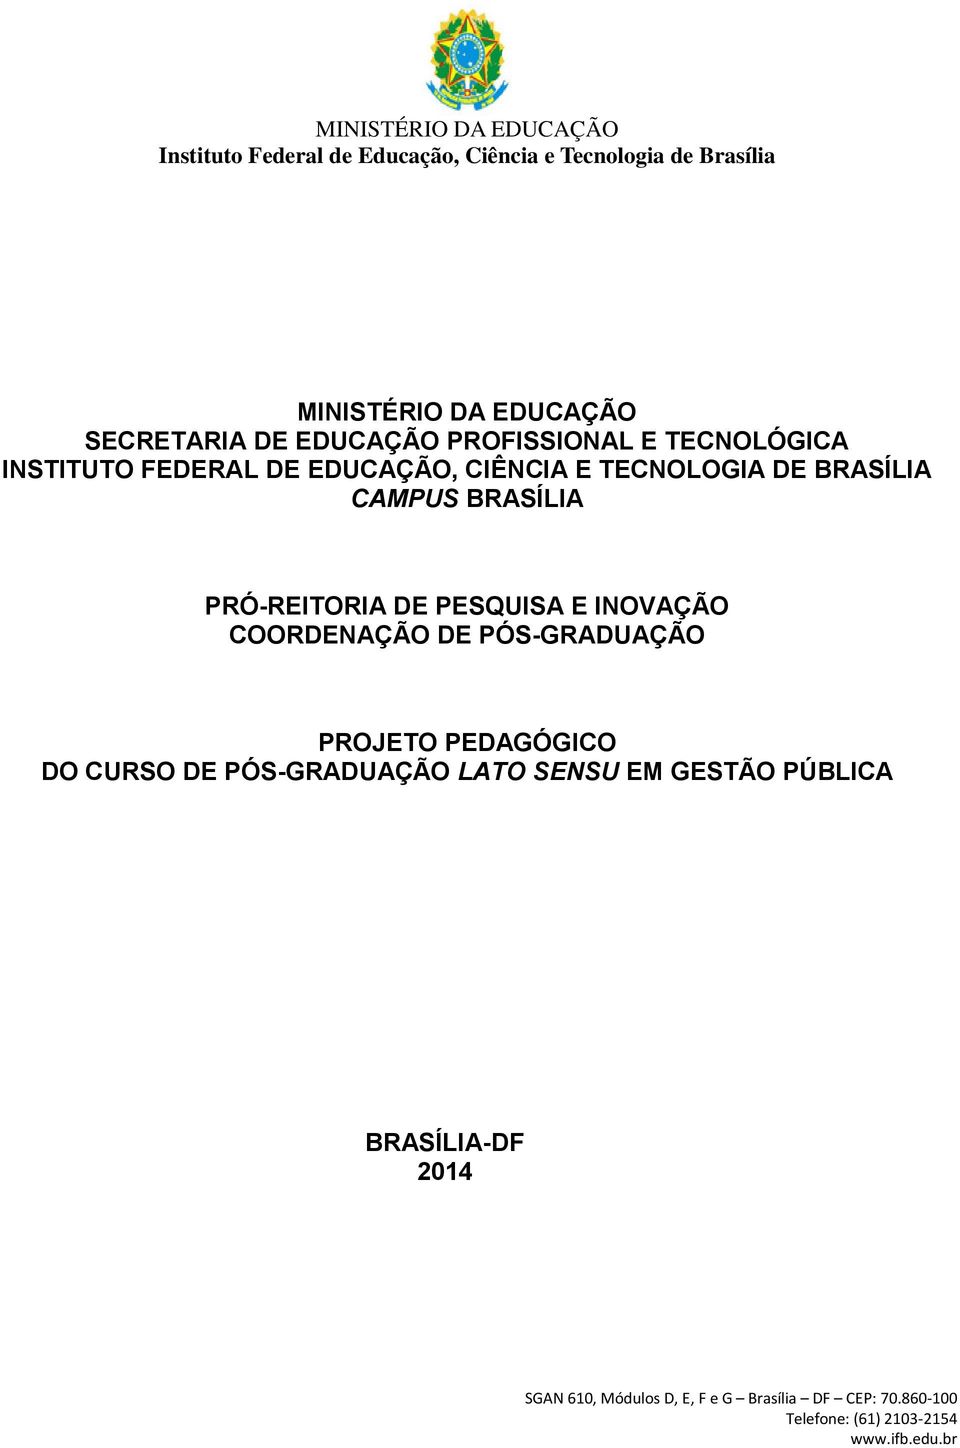 BRASÍLIA PRÓ-REITORIA DE PESQUISA E INOVAÇÃO COORDENAÇÃO DE PÓS-GRADUAÇÃO